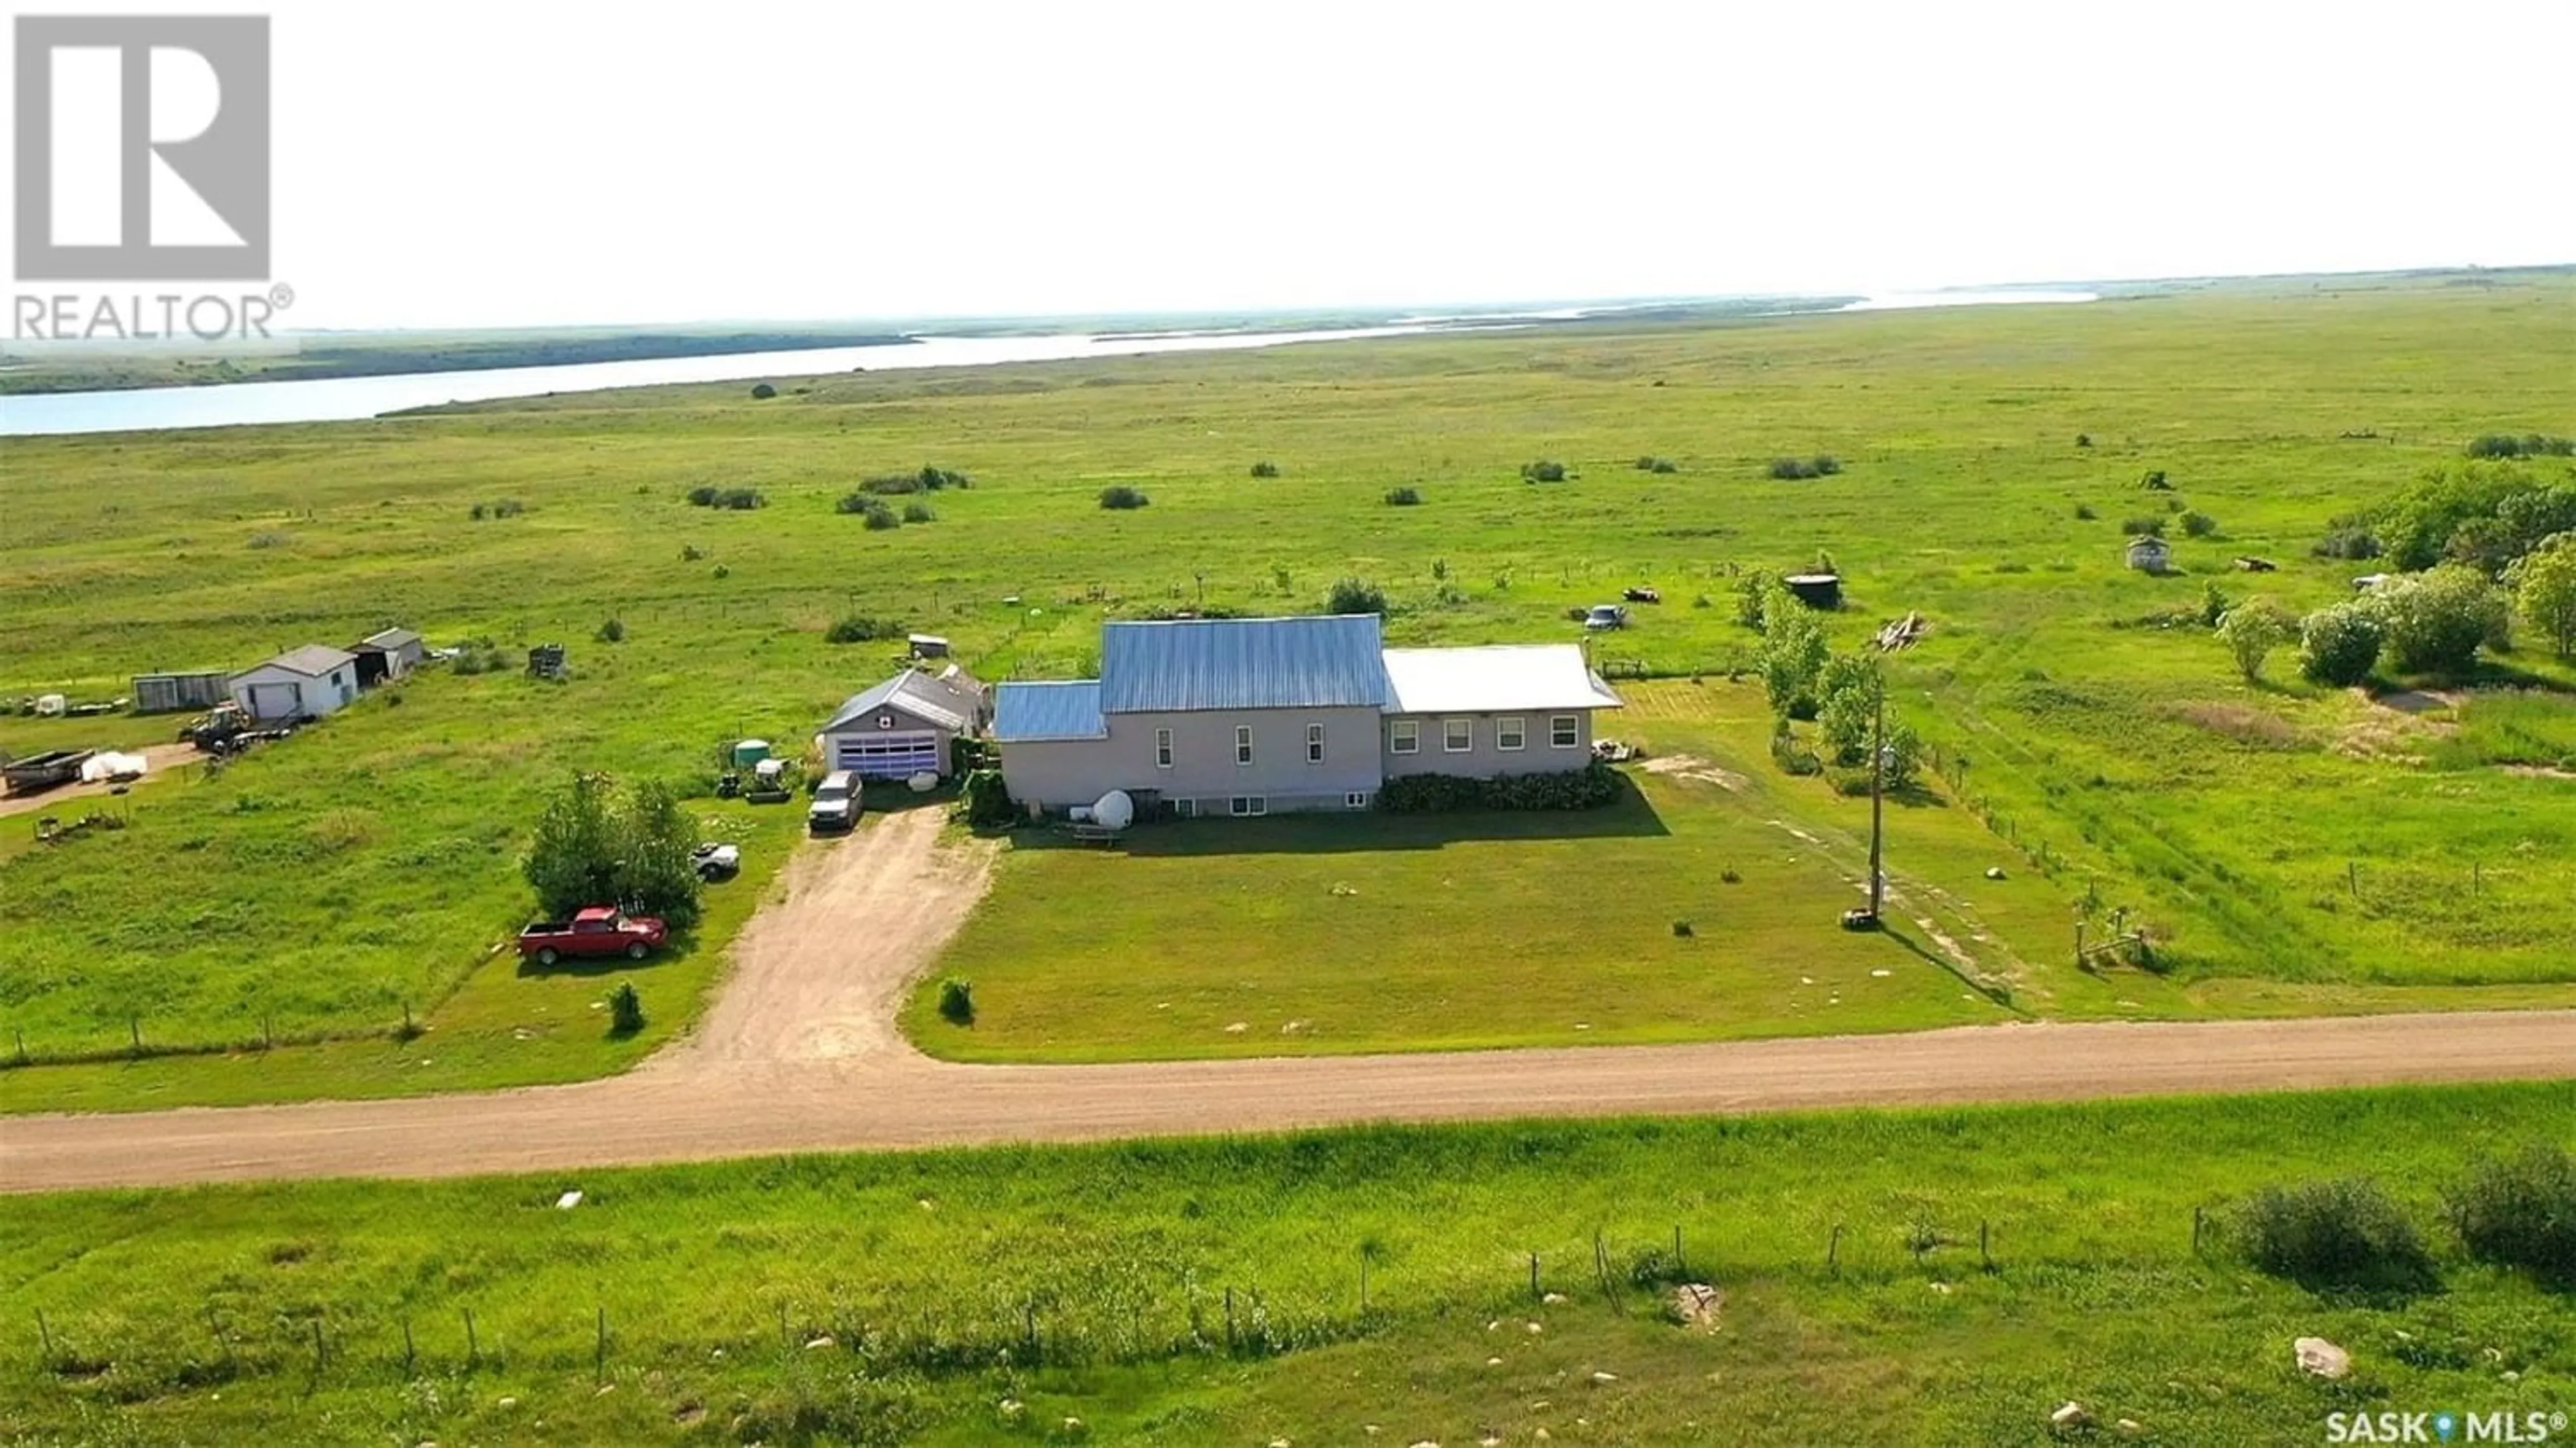 Cottage for Estevan (Hitchcock) acreage 2 acres, Estevan Rm No. 5 Saskatchewan S4A2K9